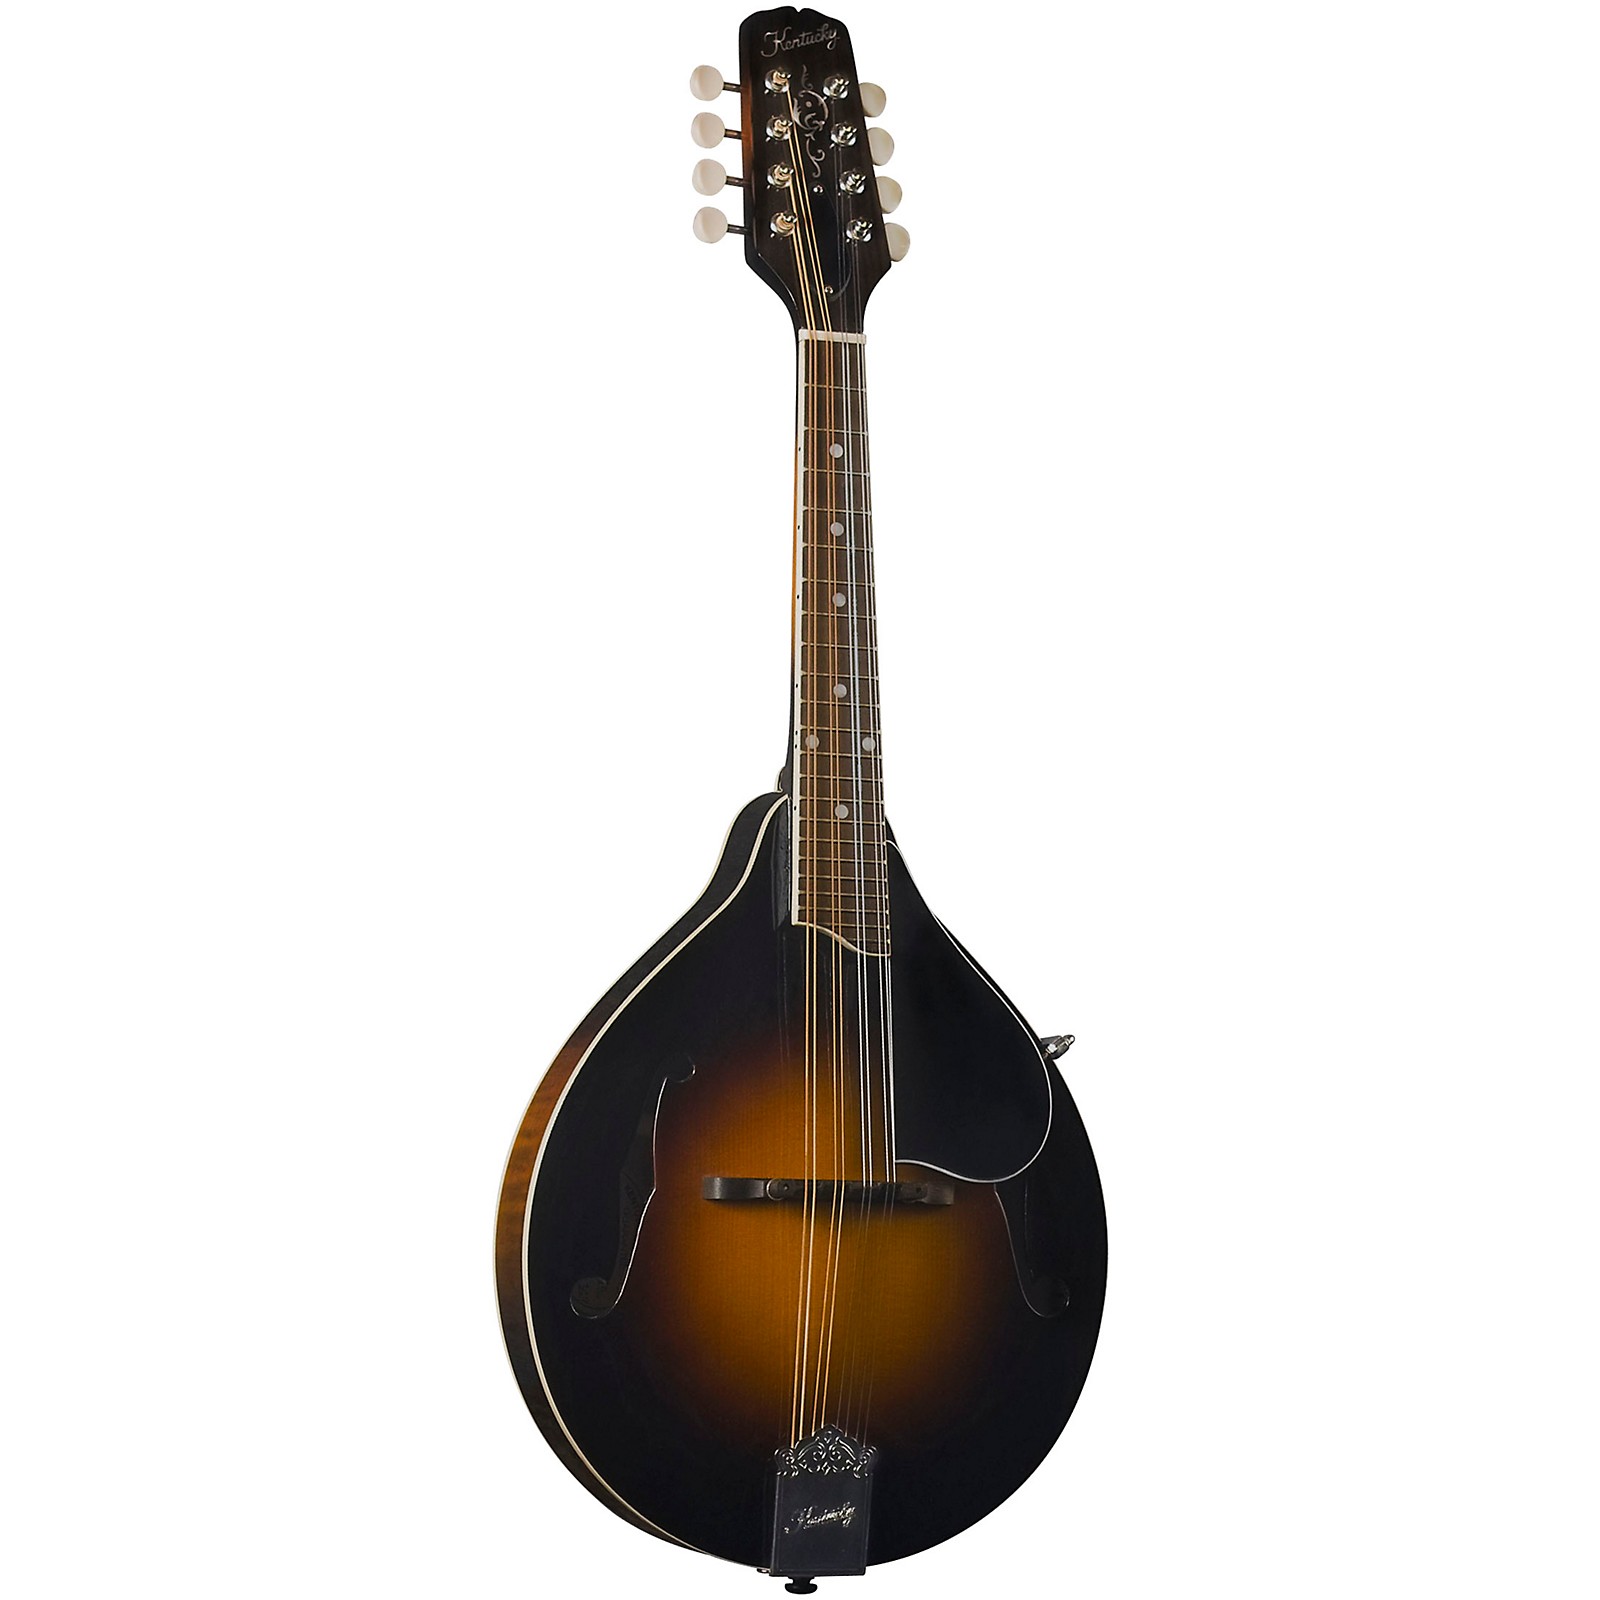 kentucky mandolin history